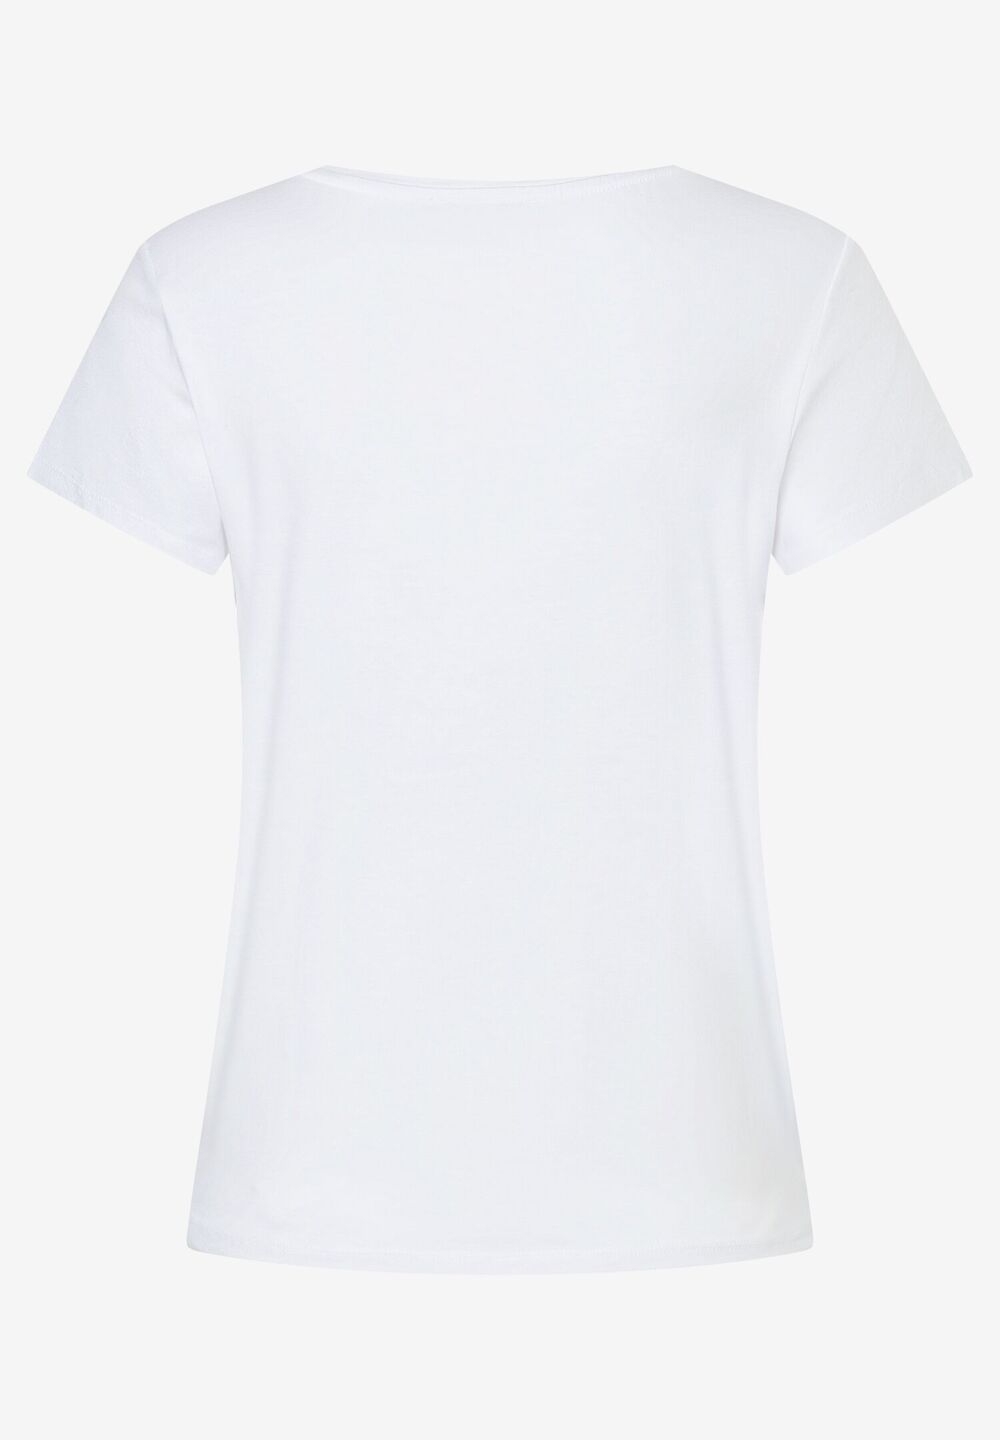 T-Shirt mit Frontprint, Frühjahrs-Kollektion, weissDetailansicht 2